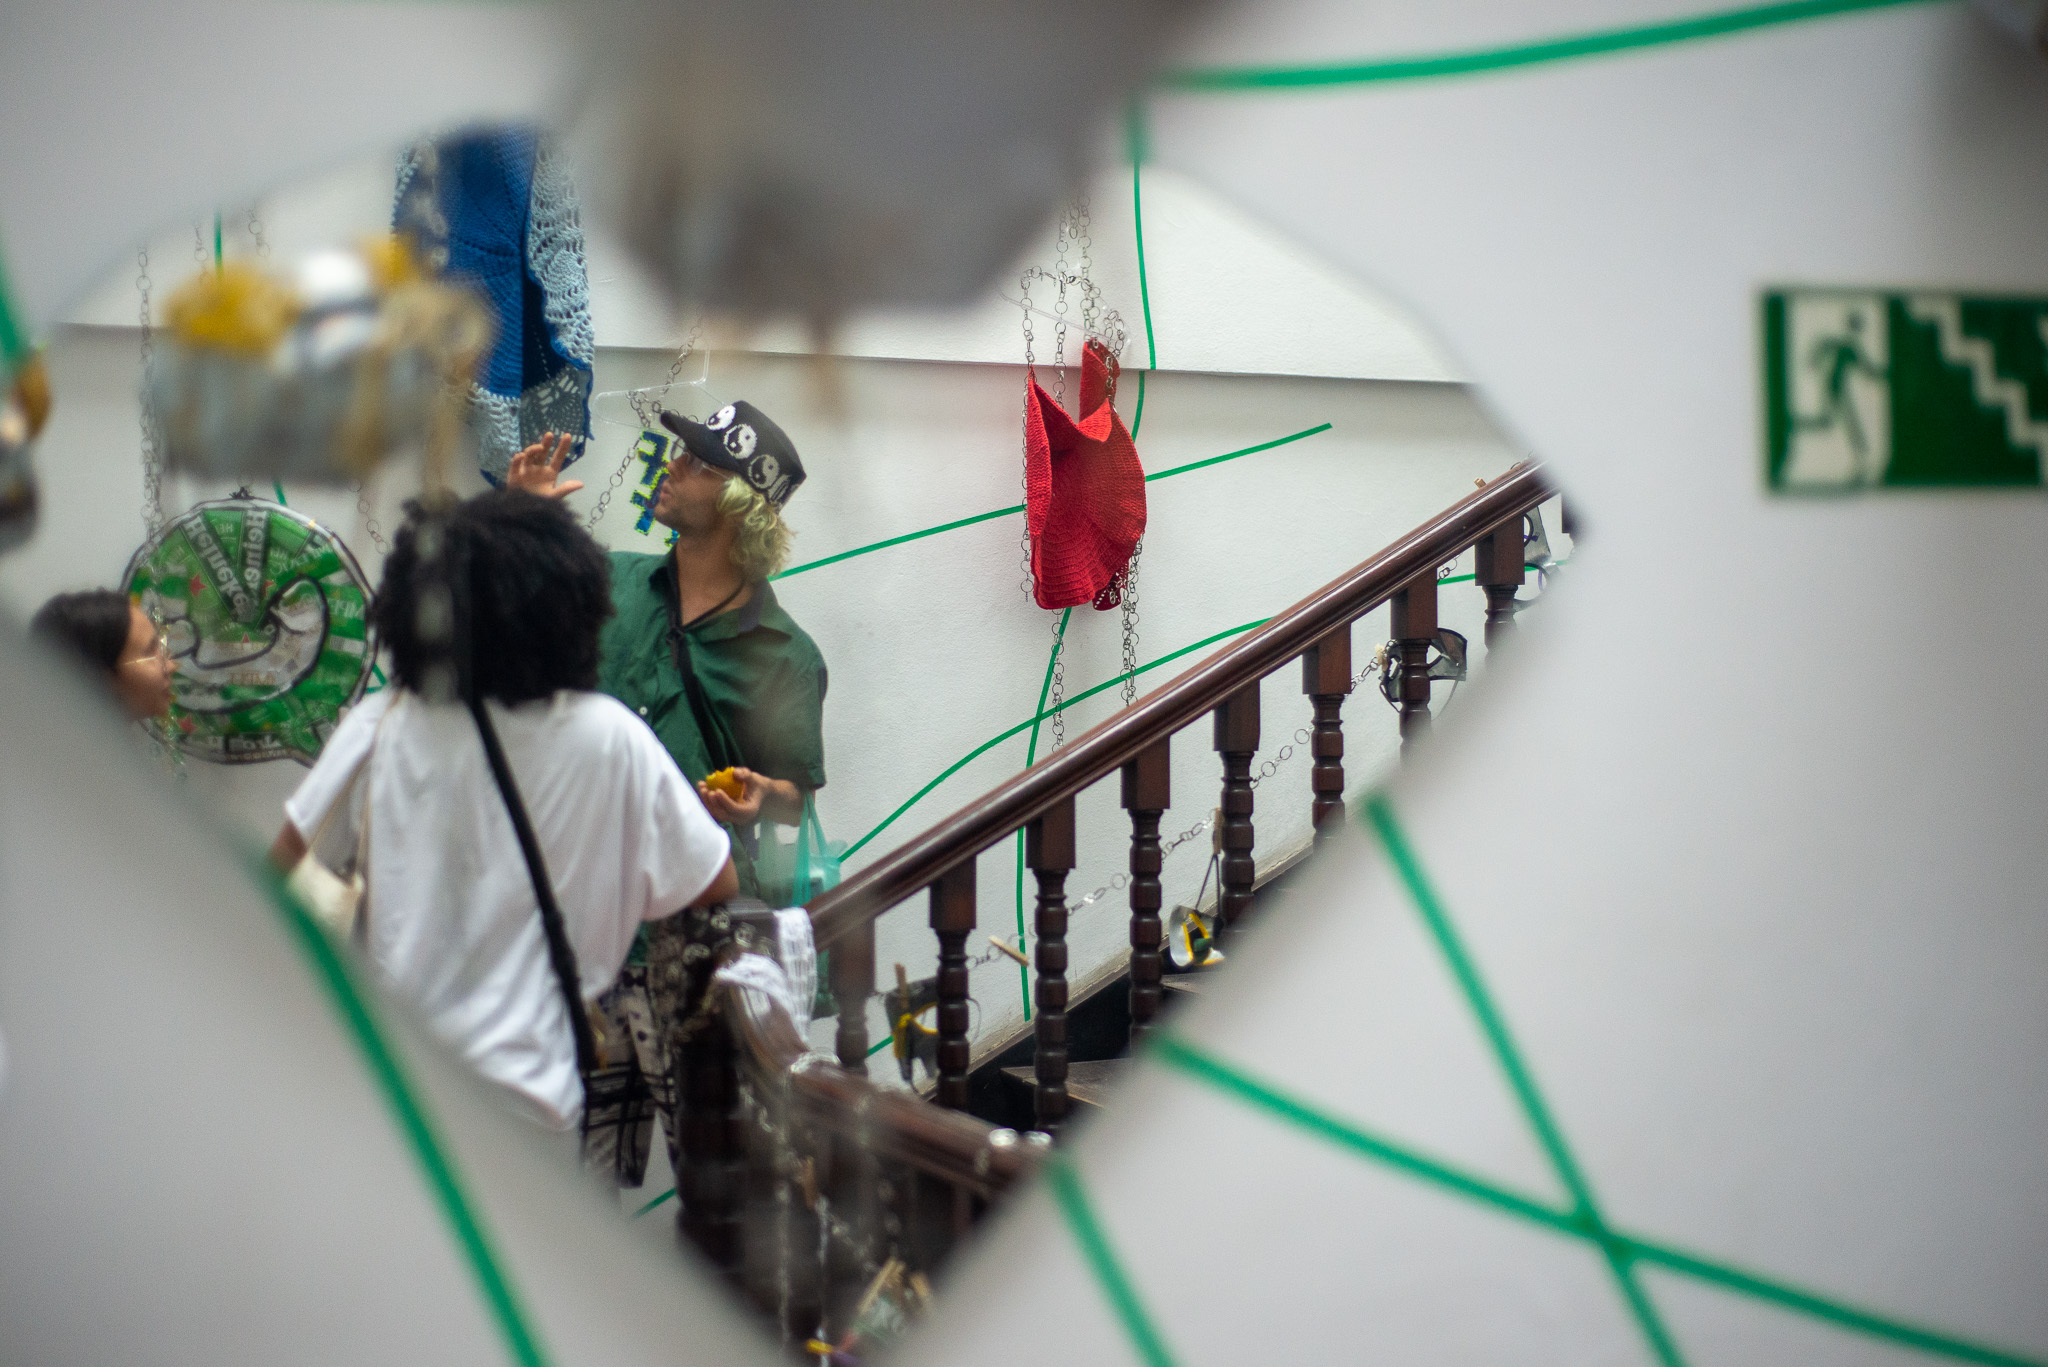 Um espelho quebrado reflete parte da instalação "MetaHall", no qual aparece uma escada e duas pessoas refletidas.